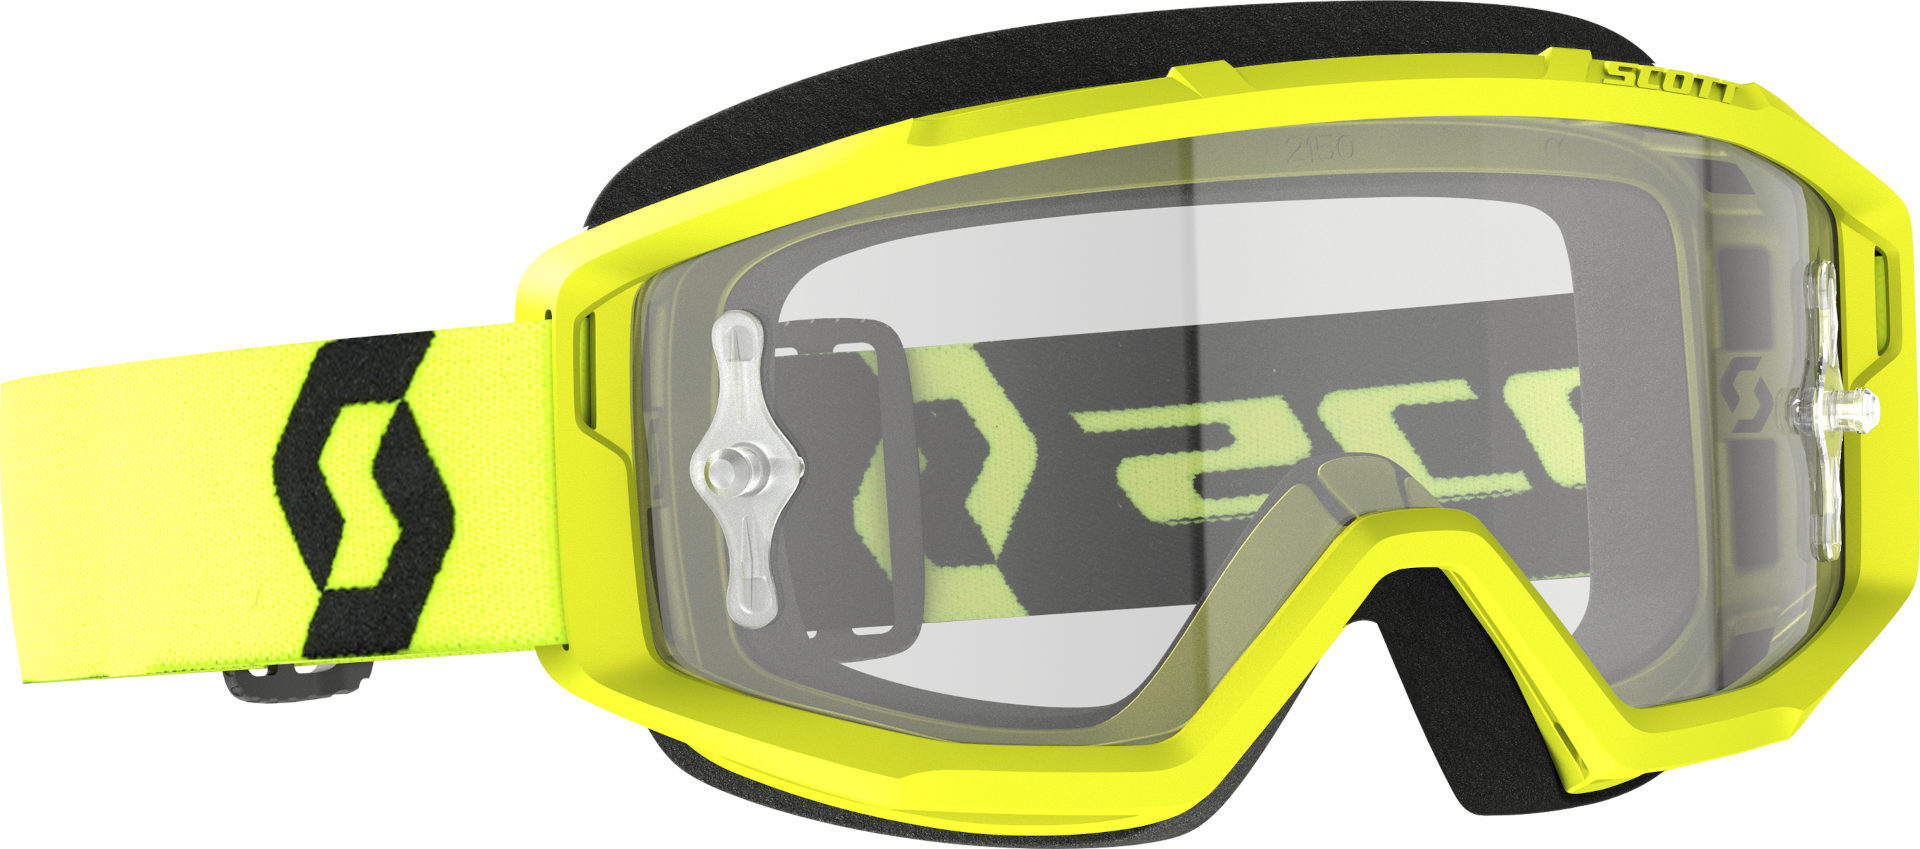 Мотоциклетные очки Scott Primal Clear с логотипом, желтый/черный очки champion c1006 50 г желтый черный